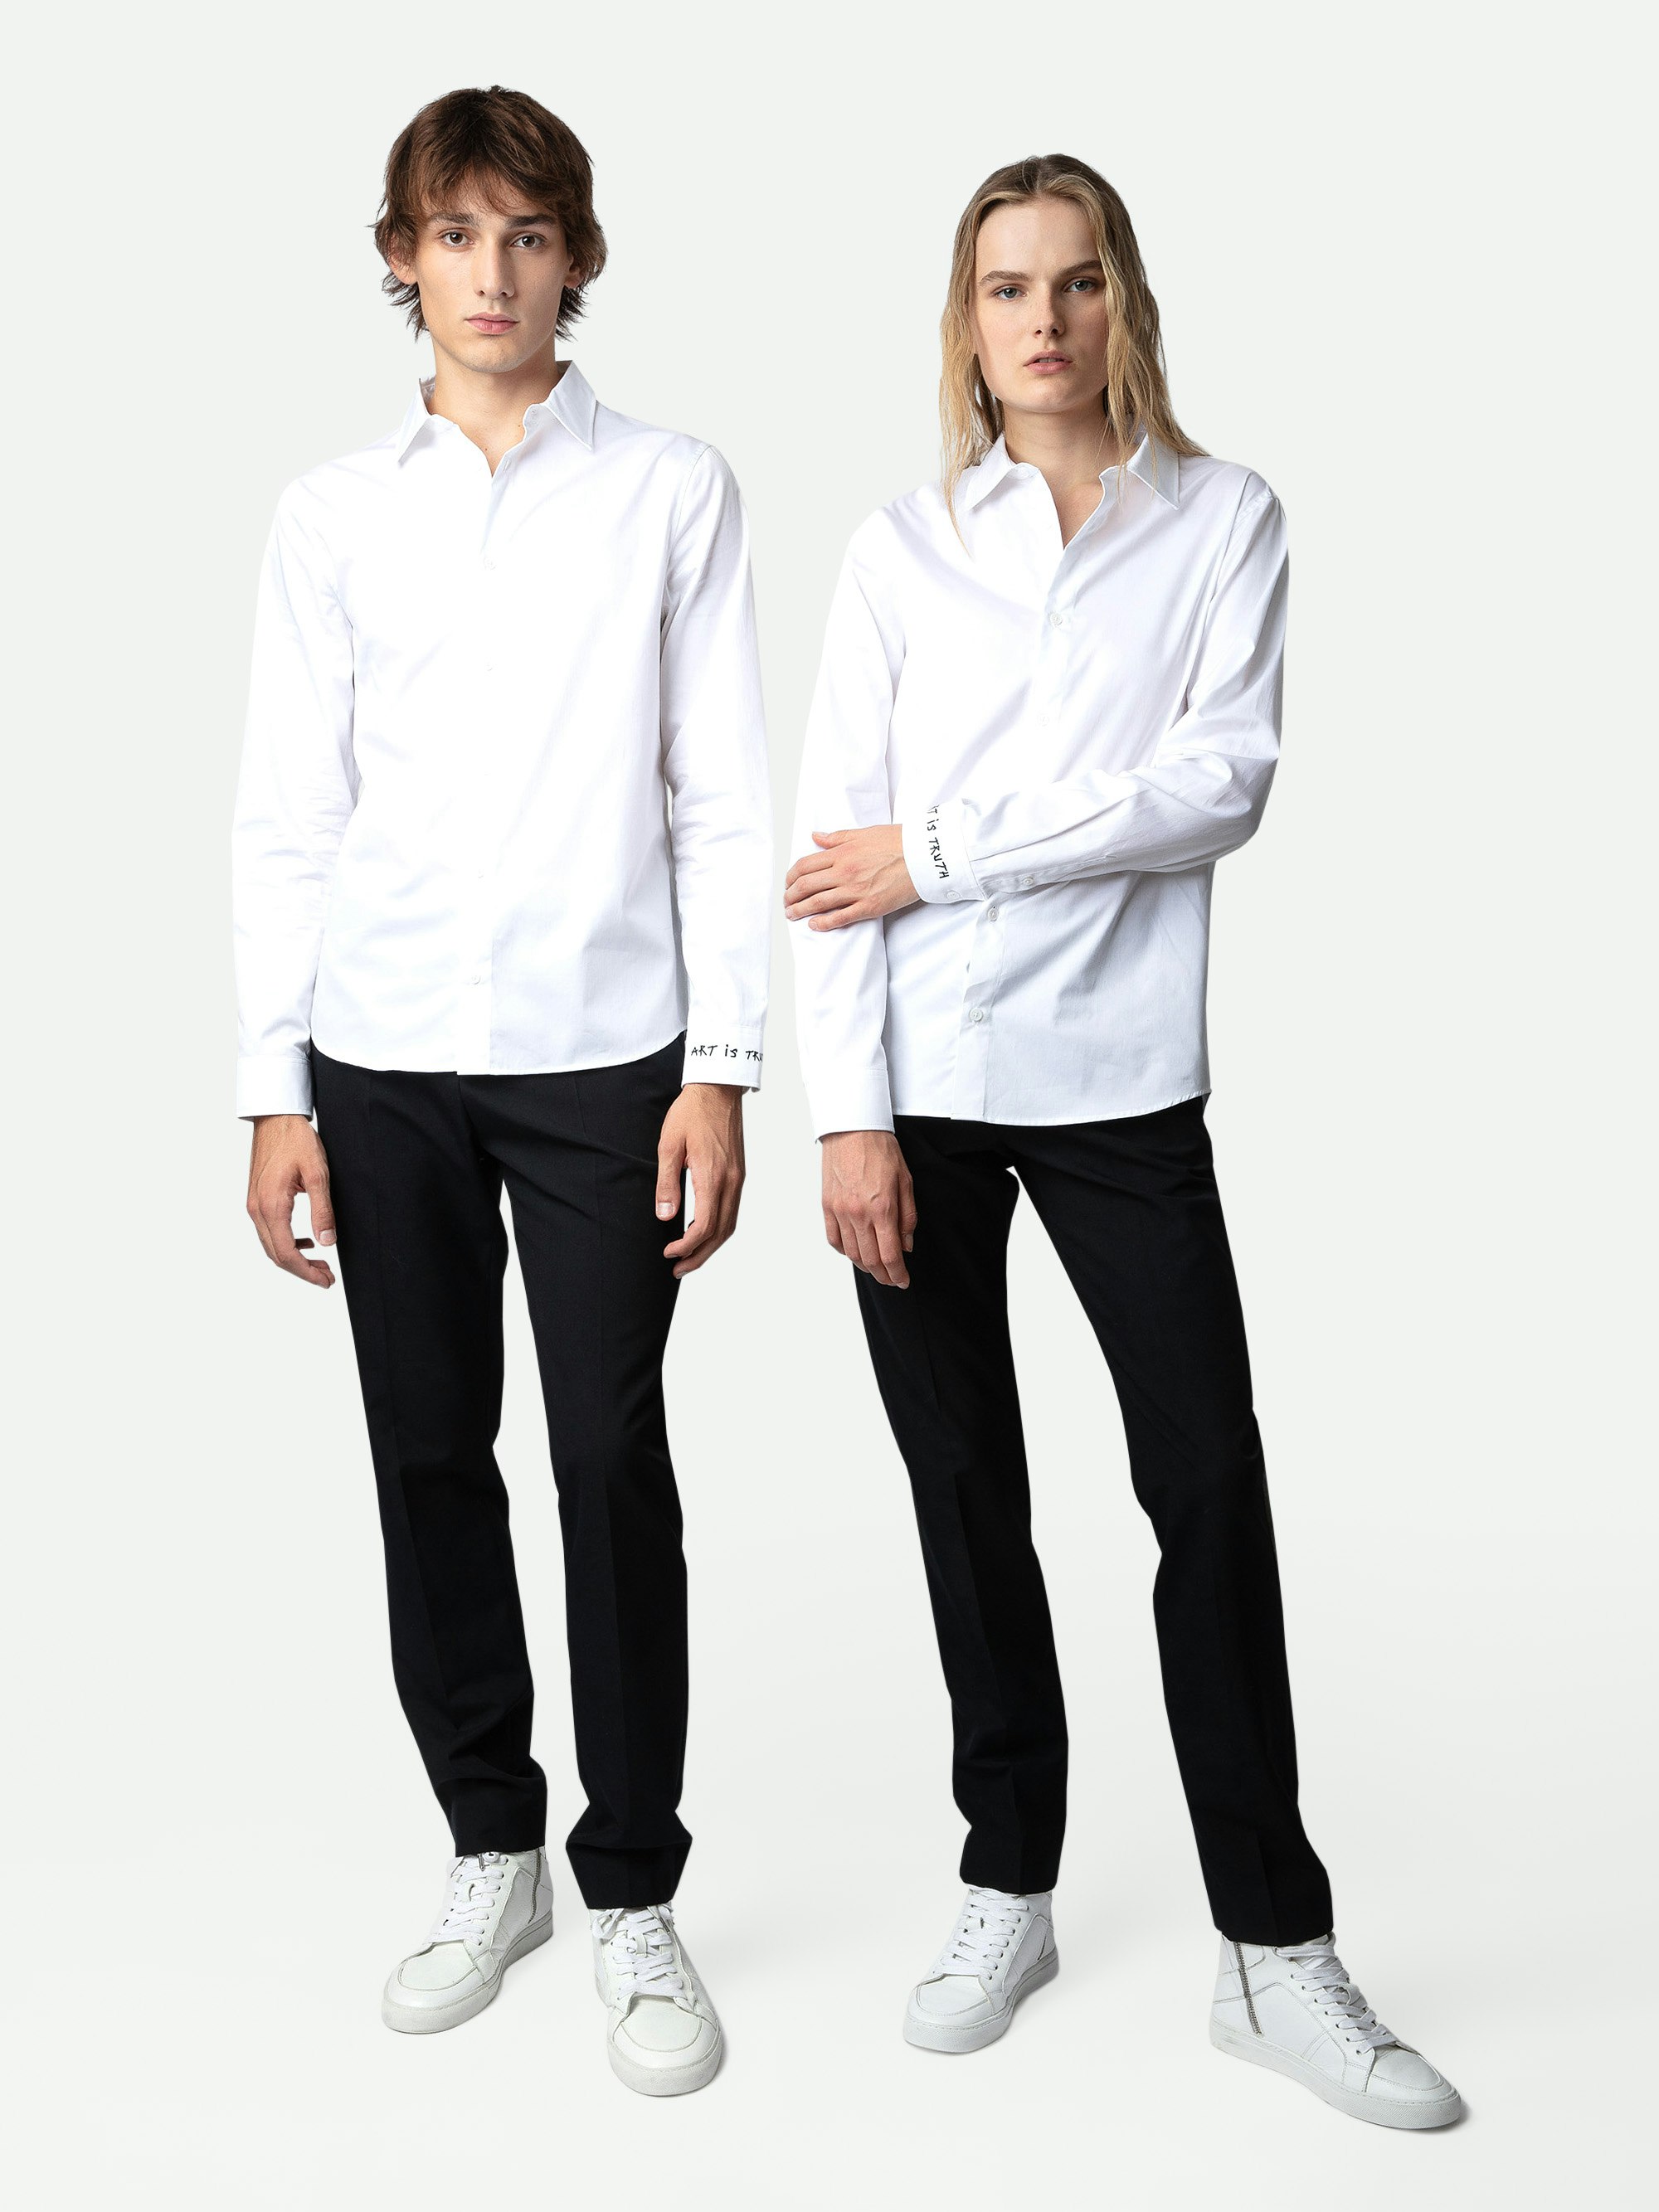 Camicia Sydney - Camicia unisex in cotone bianco decorata con ricamo "Art Is Truth" sul polsino destro.